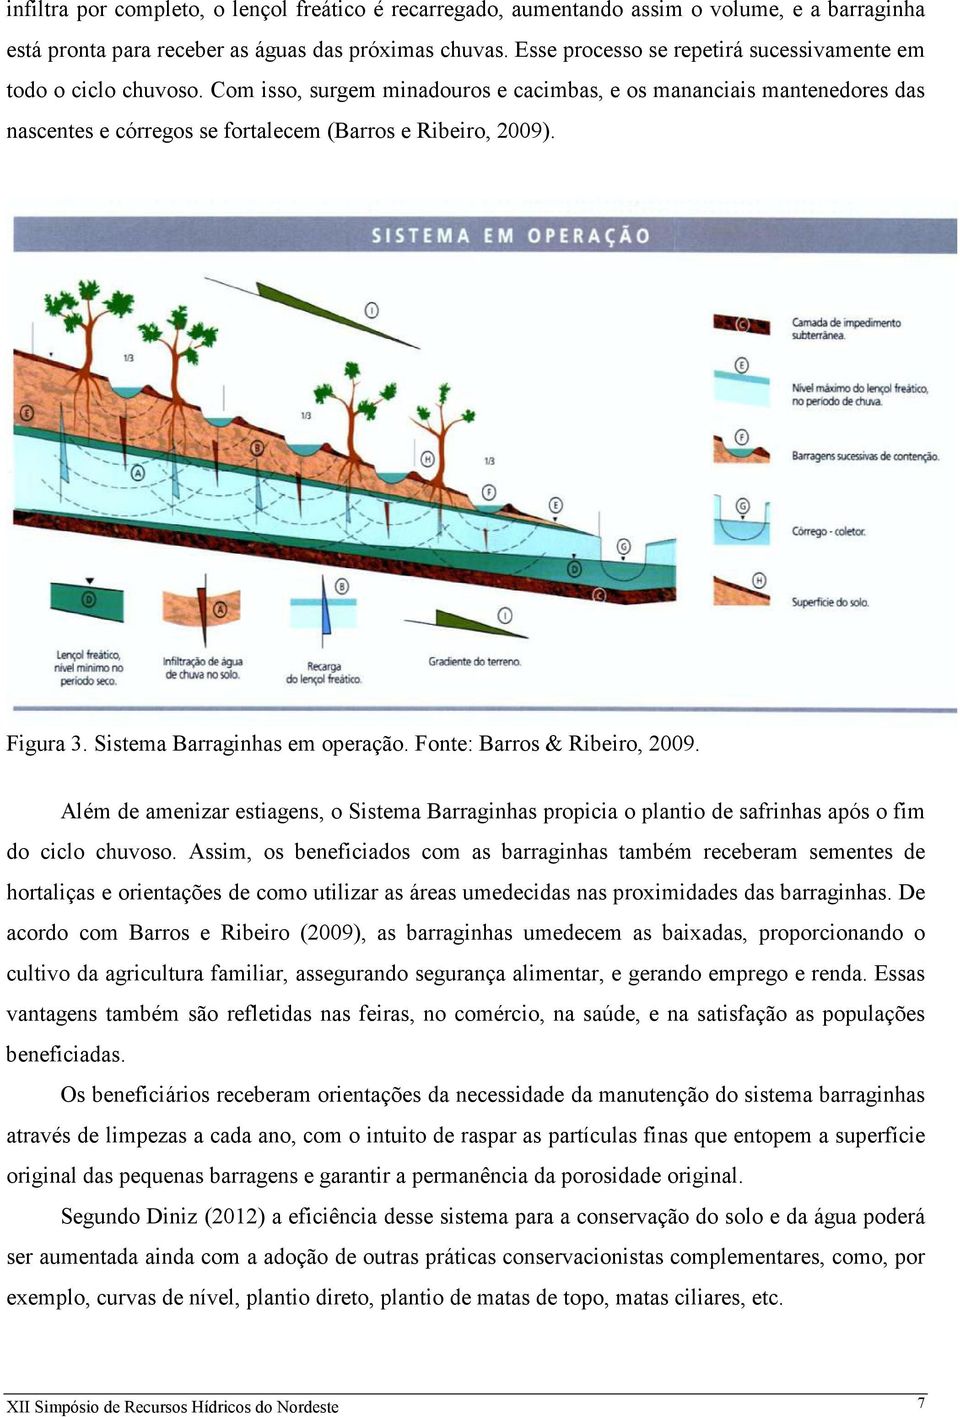 Figura 3. Sistema Barraginhas em operação. Fonte: Barros & Ribeiro, 2009. Além de amenizar estiagens, o Sistema Barraginhas propicia o plantio de safrinhas após o fim do ciclo chuvoso.